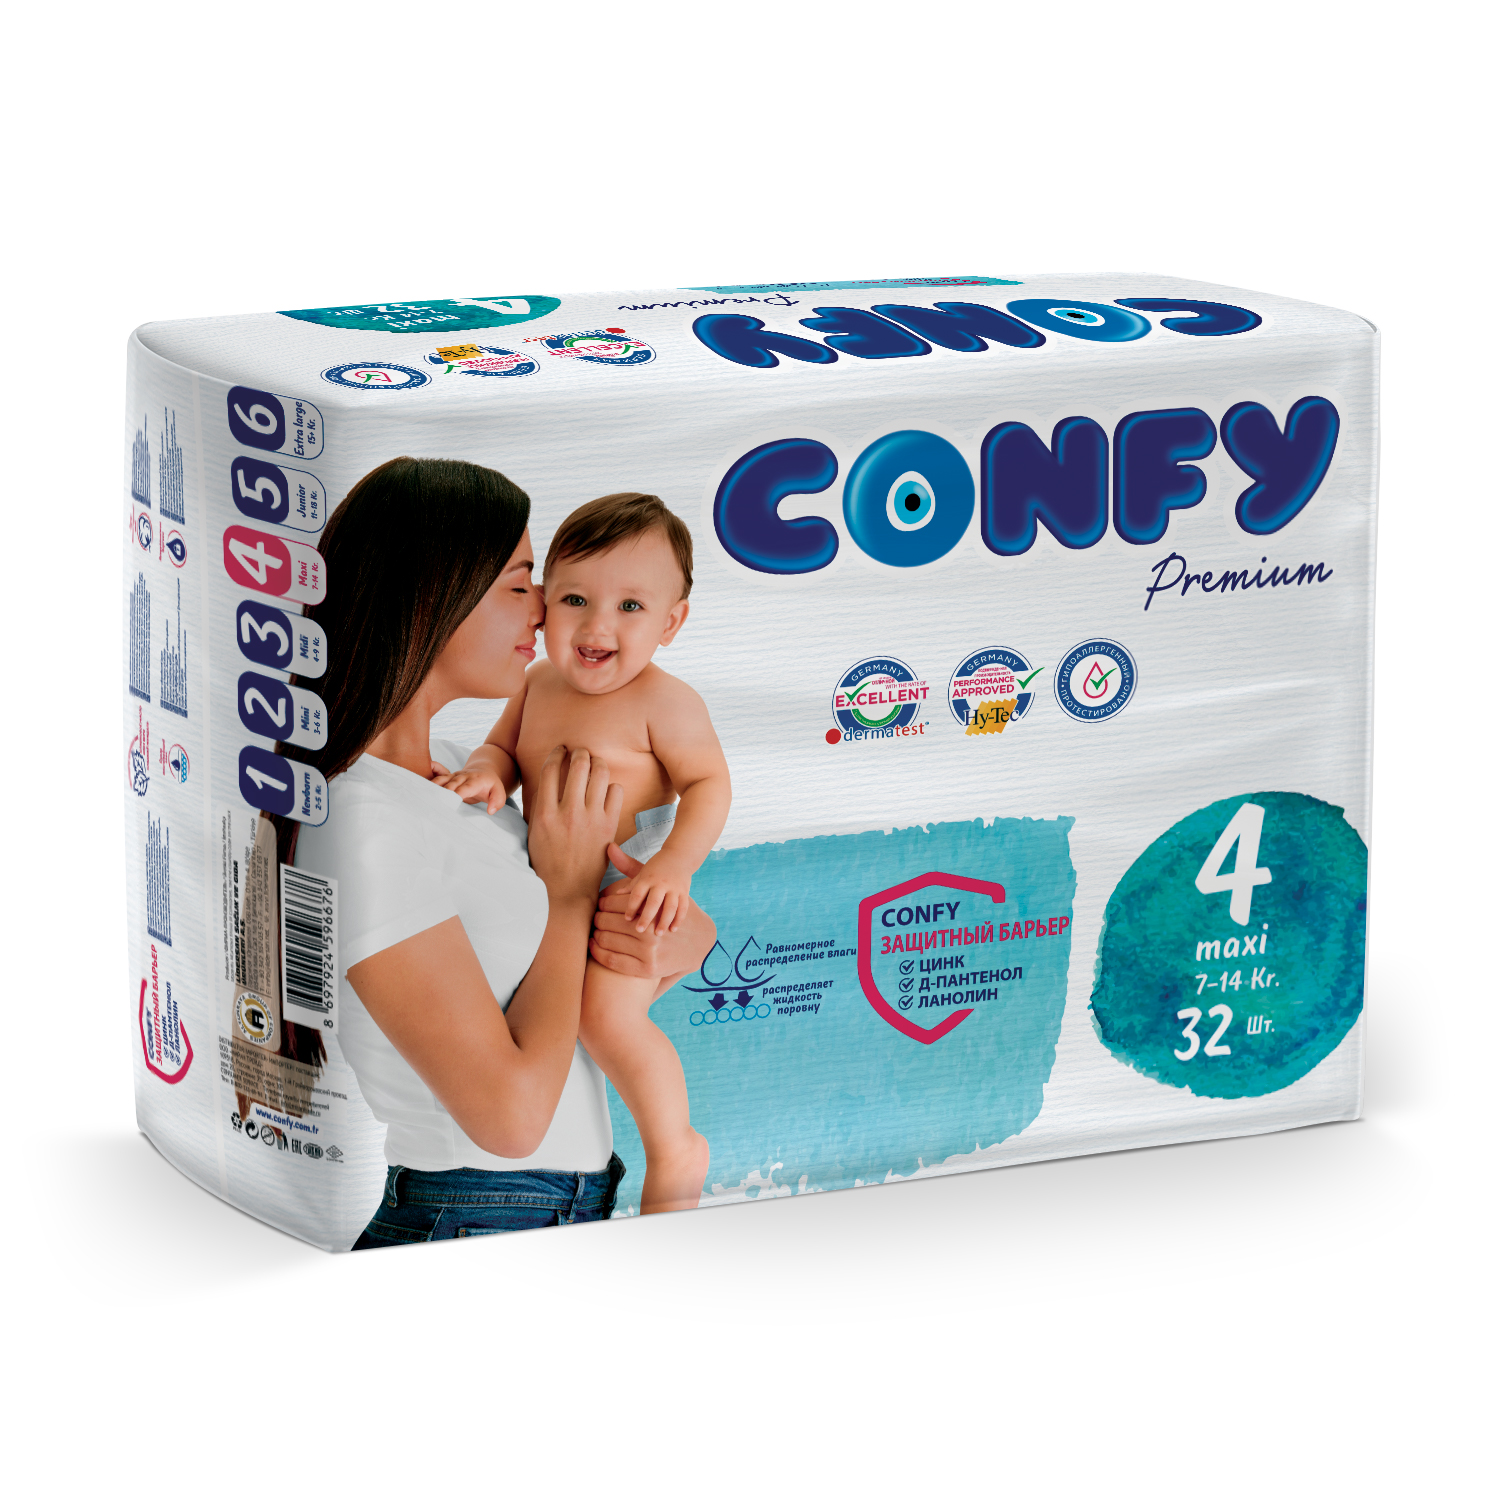 Подгузники детские Confy Premium 7-14 кг (размер 4) памперсы 32 шт